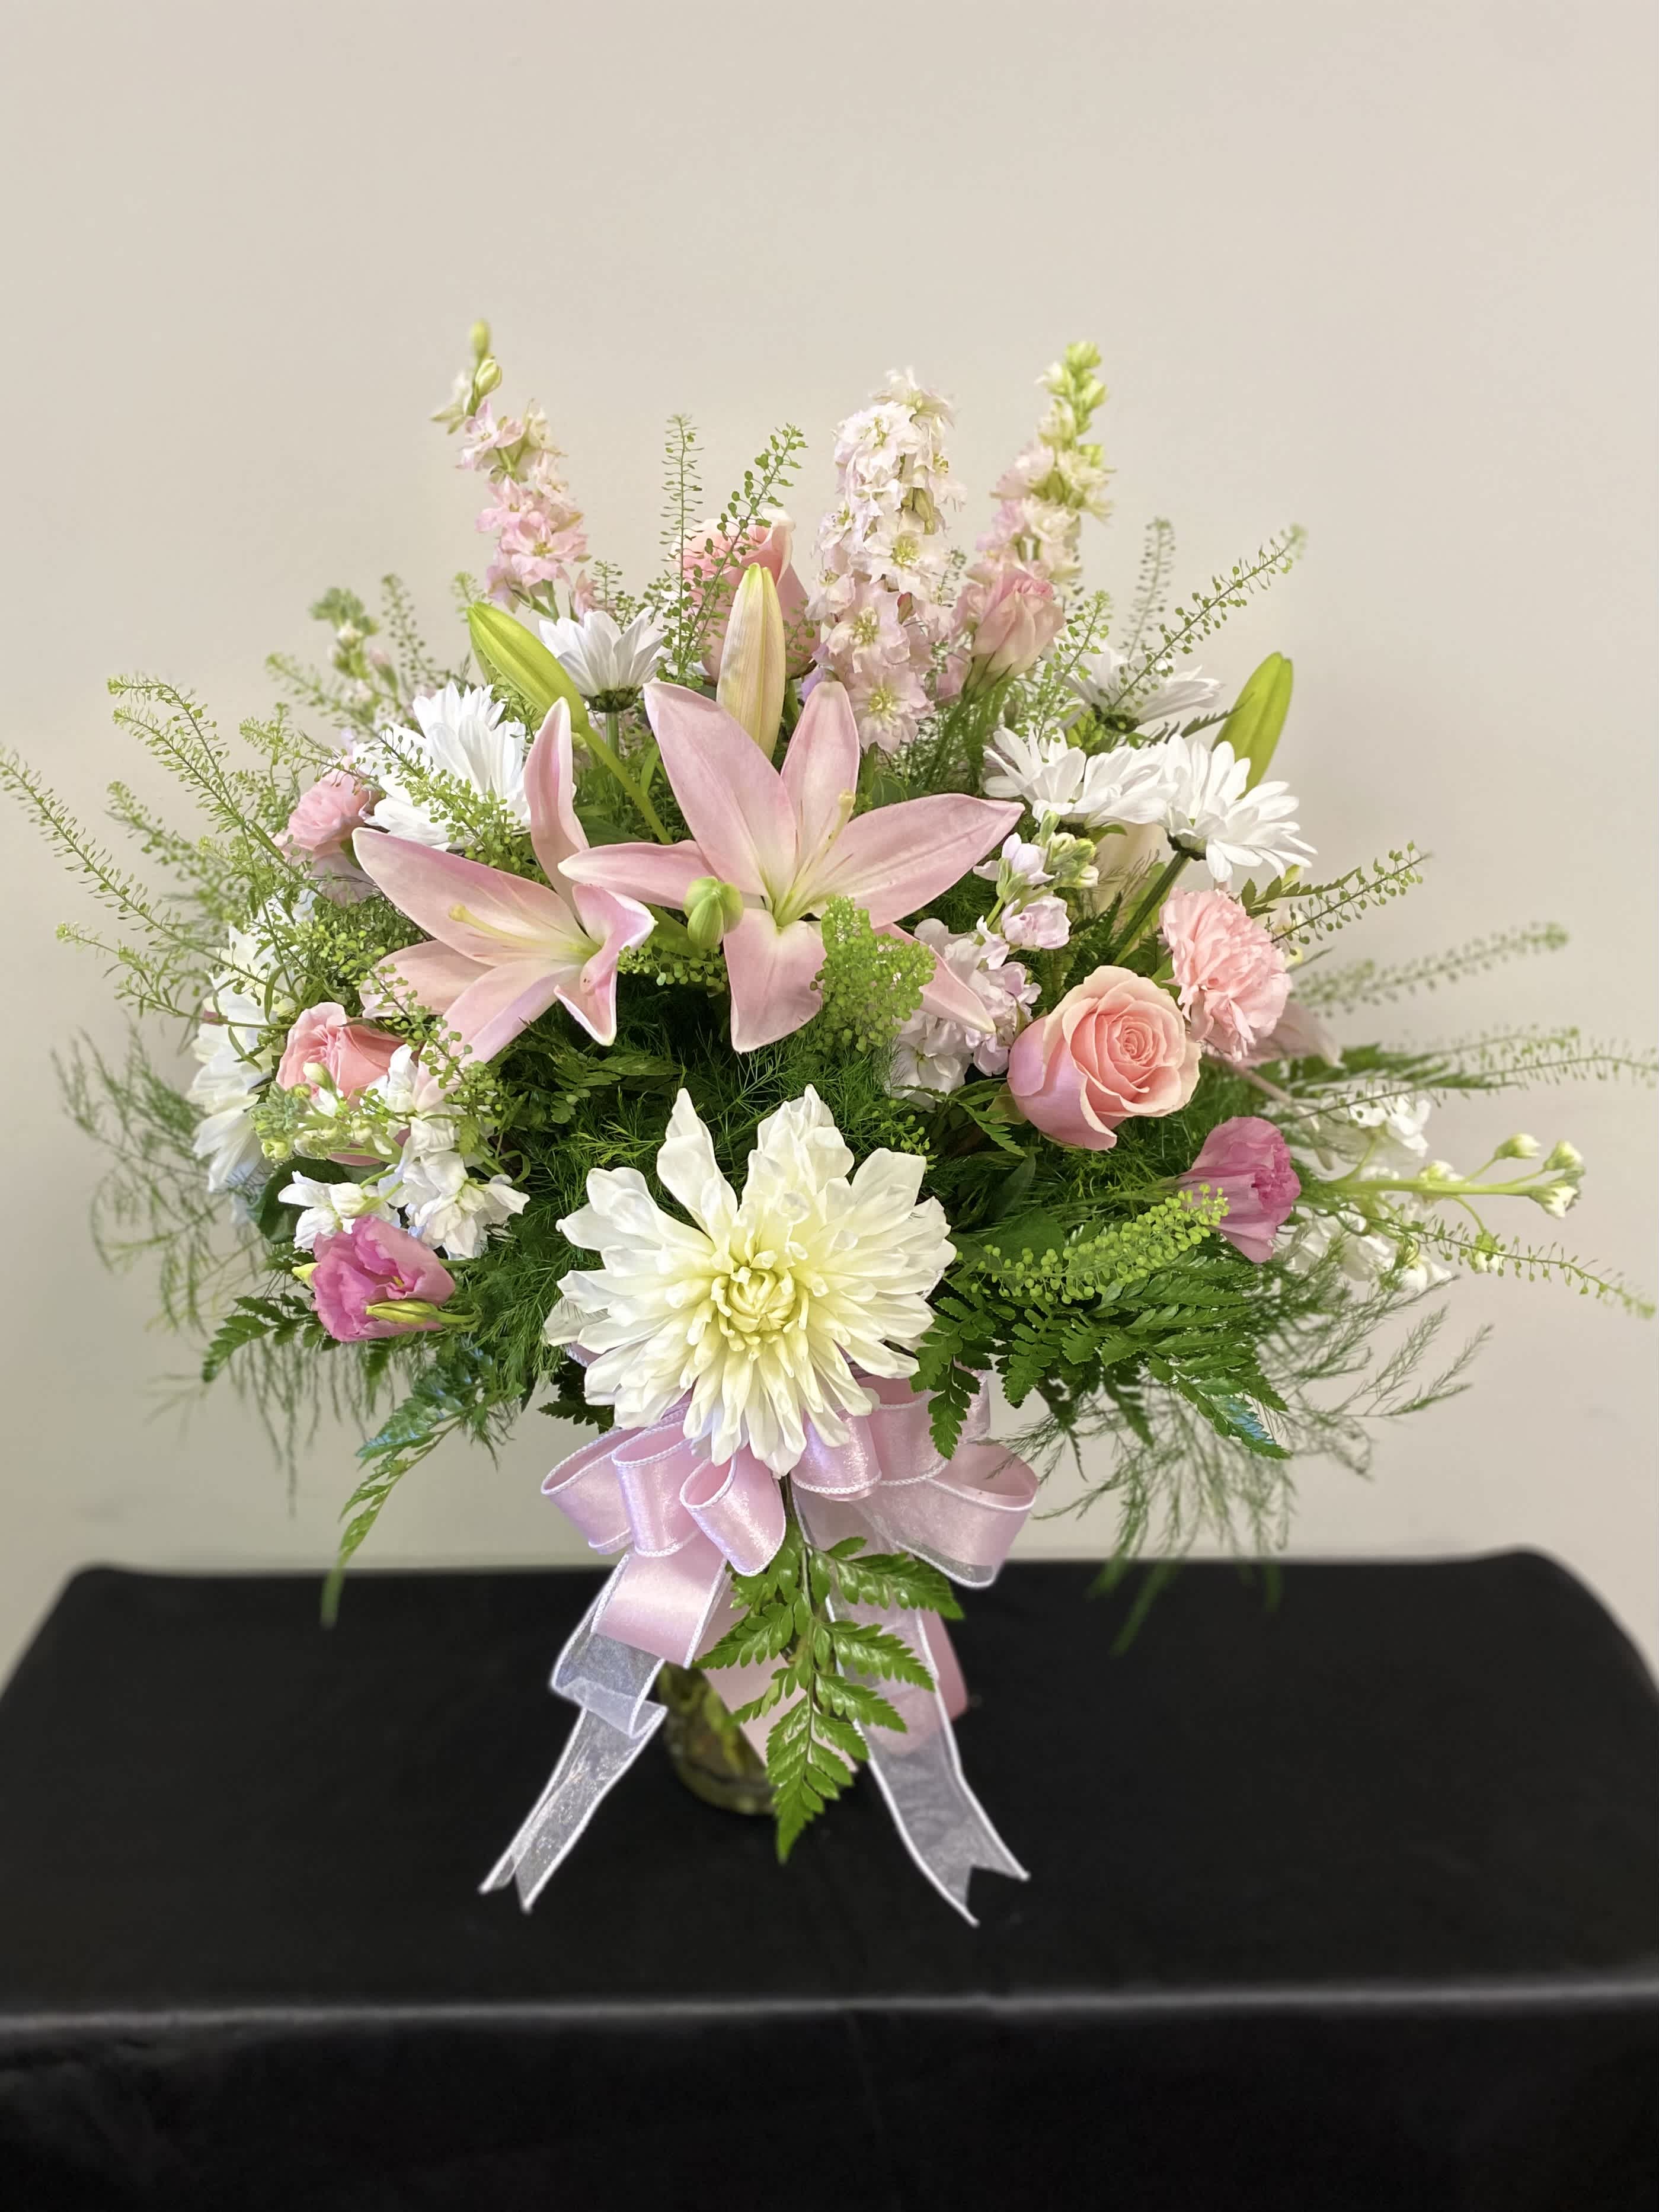 Light Pink Love - A bouquet that tells a soft sweet message